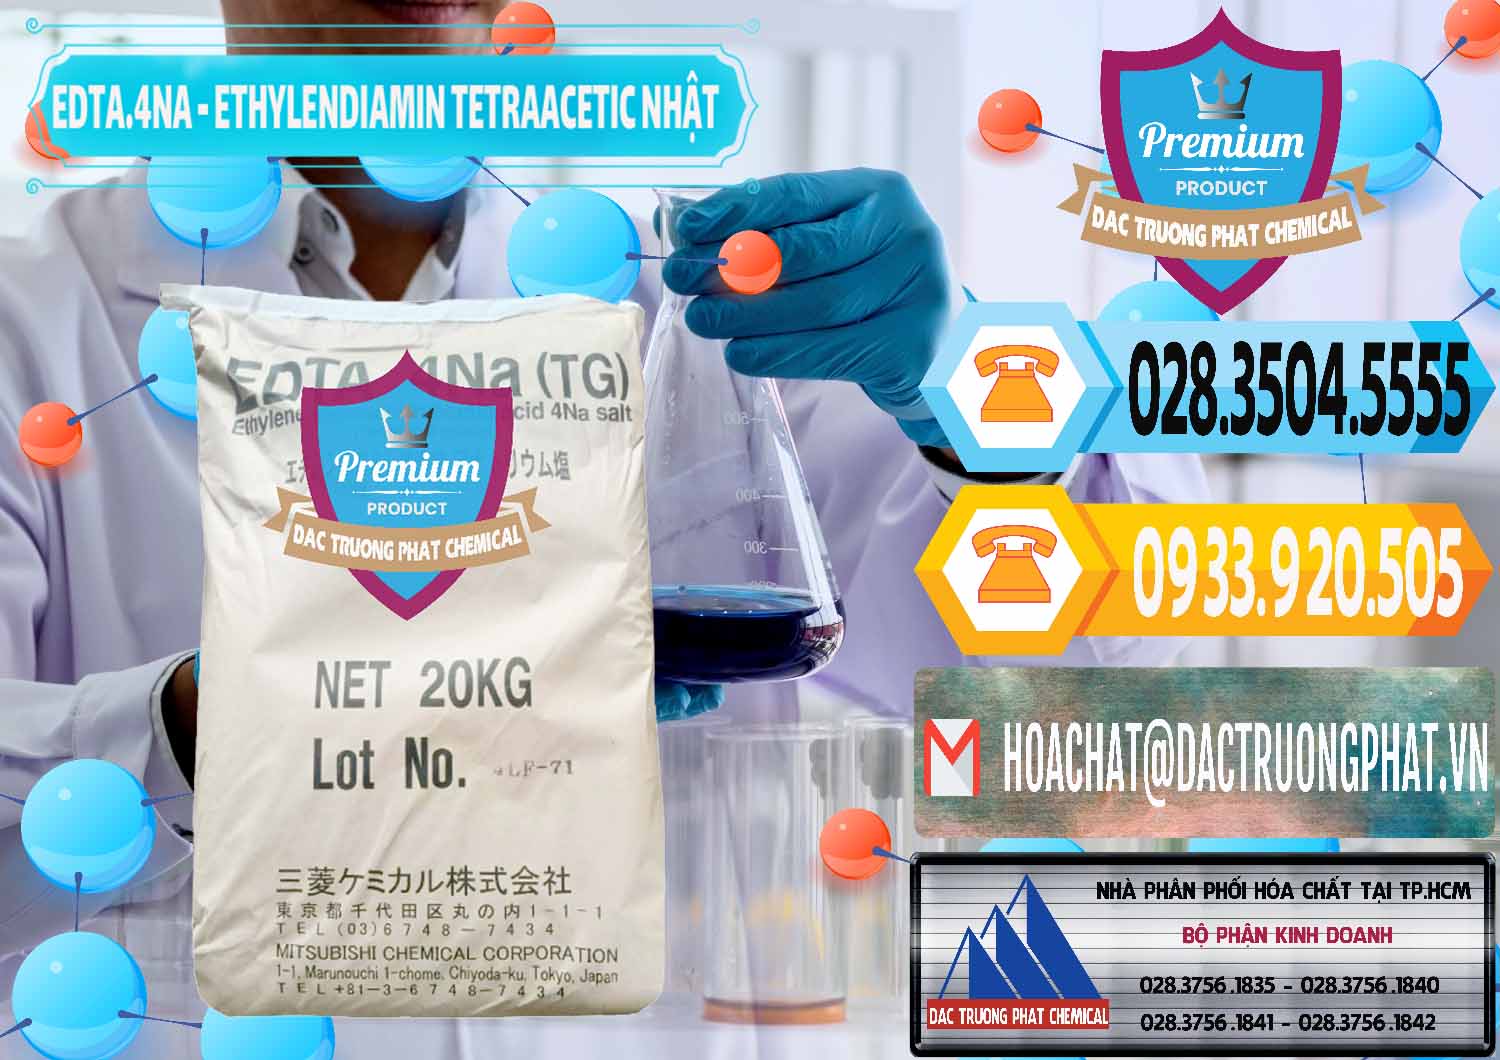 Chuyên cung cấp - bán EDTA 4Na - Ethylendiamin Tetraacetic Nhật Bản Japan - 0482 - Nơi bán & cung cấp hóa chất tại TP.HCM - hoachattayrua.net